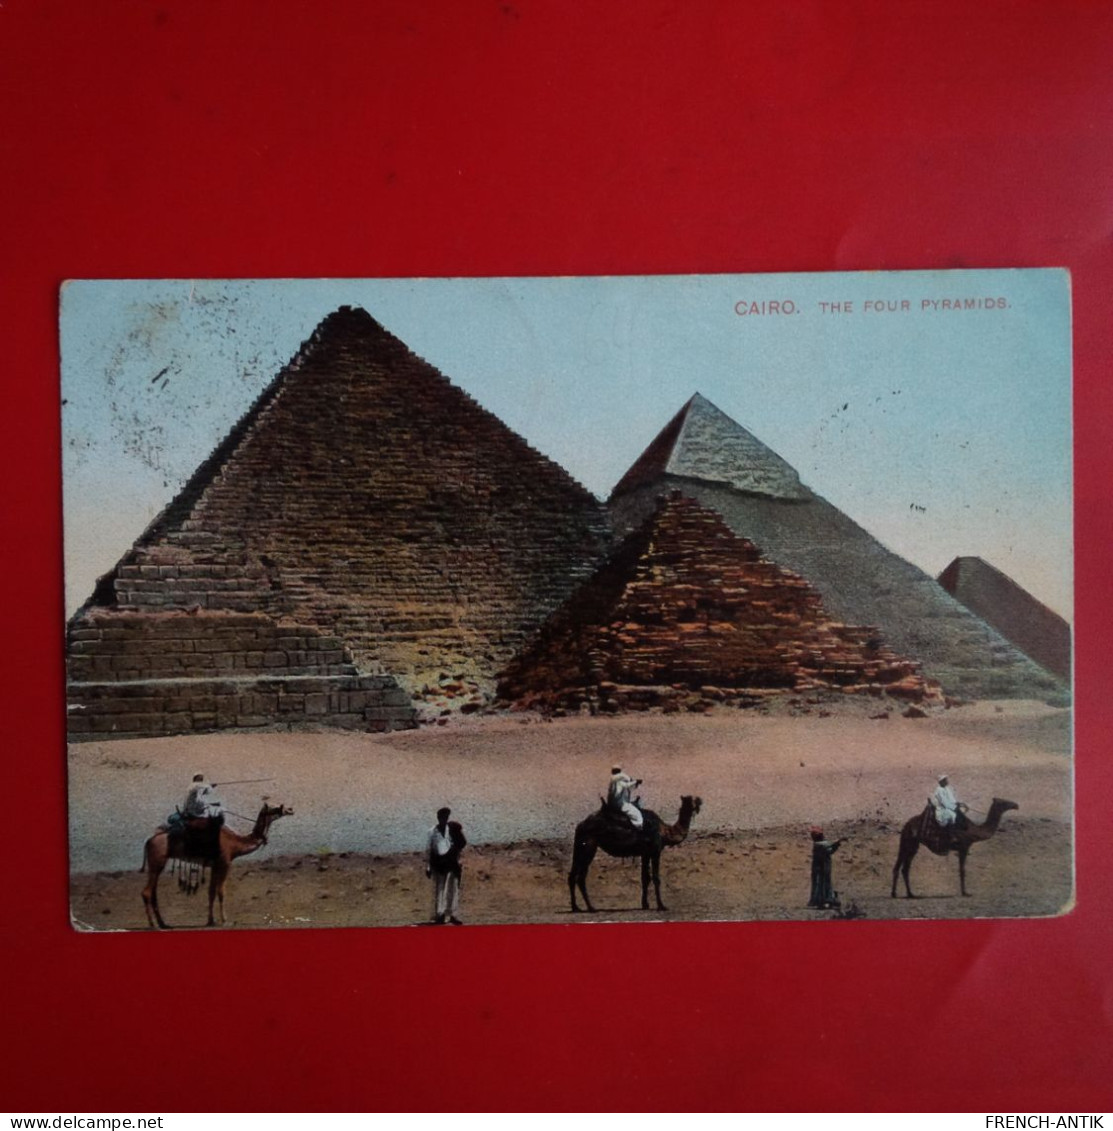 CAIRO THE FOUR PYRAMIDS - Pyramids